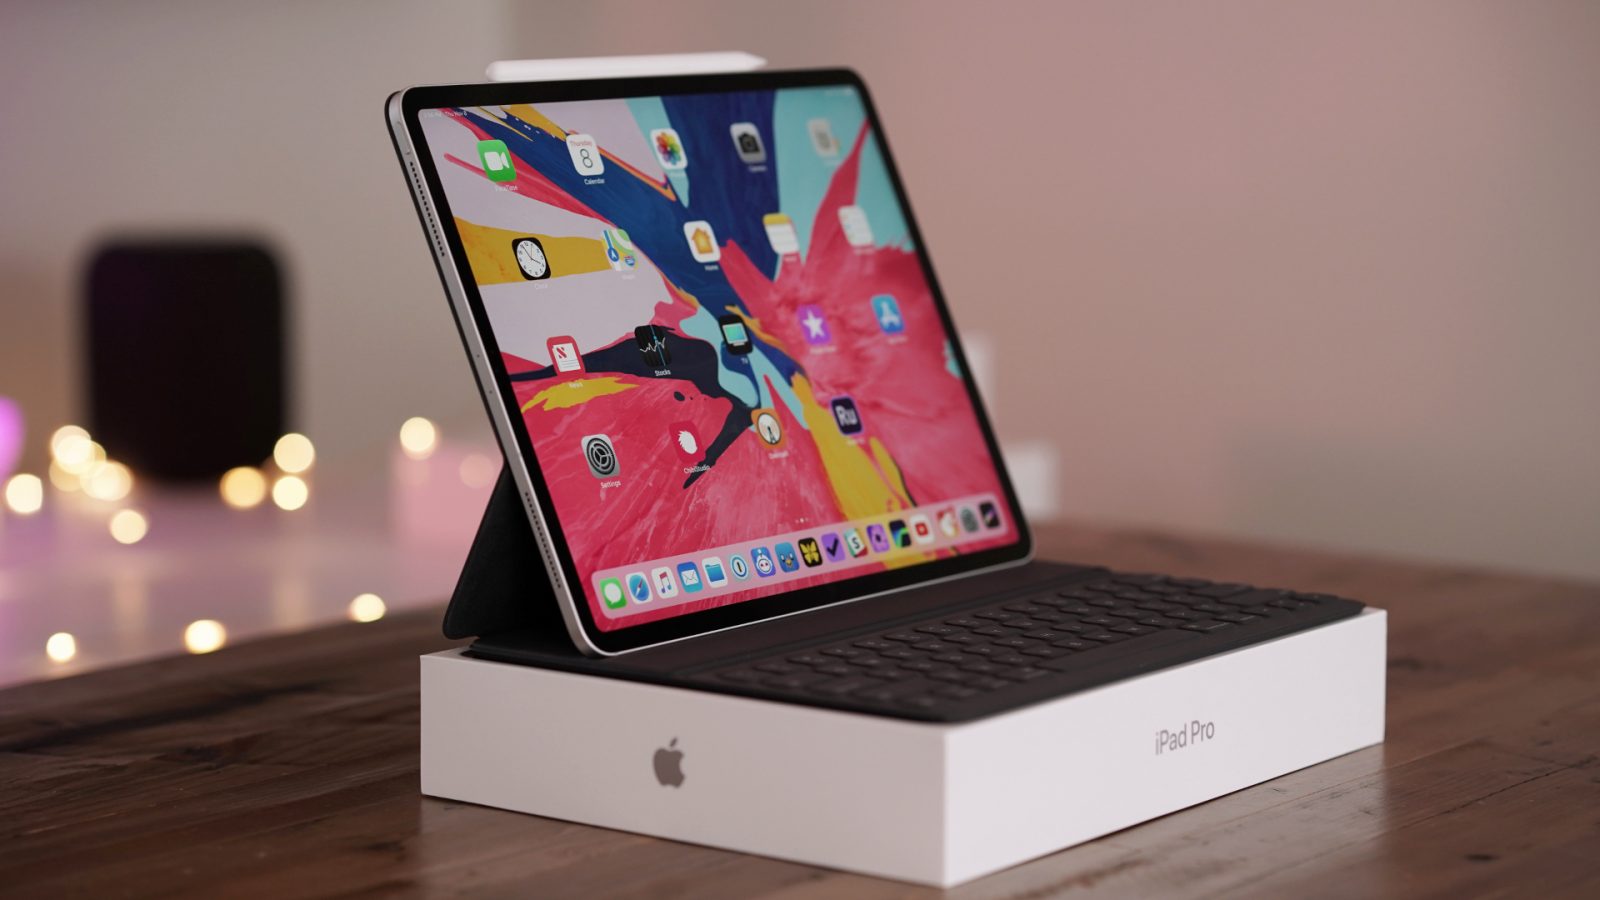 Jabłko obniżył cenę iPada Pro (ale i tak jest drogi)